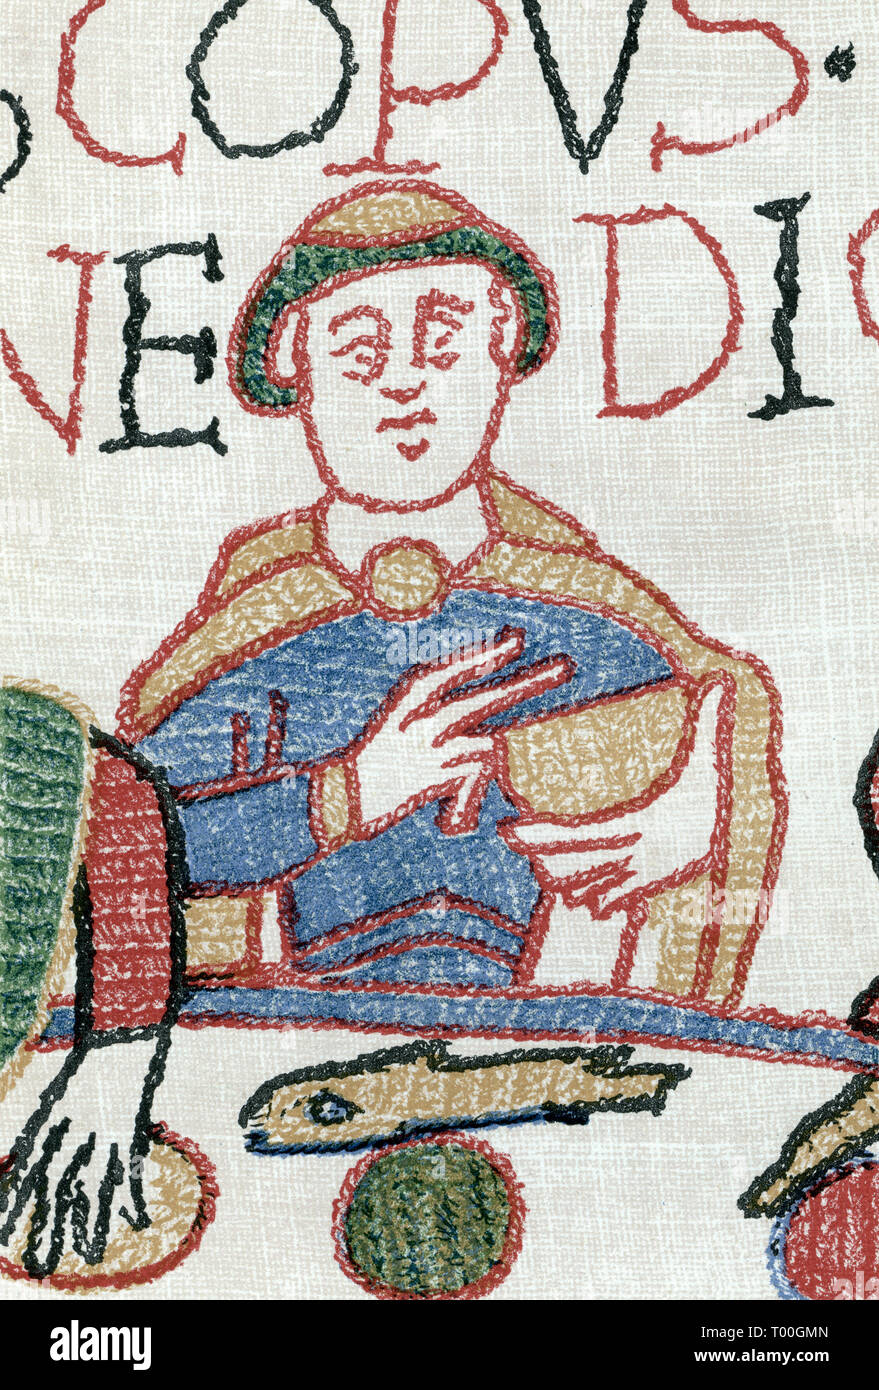 Tapiz de Bayeux: el obispo Odón diciendo gracia después del aterrizaje de Norman en Inglaterra, septiembre de 1066. El Tapiz de Bayeux es un paño bordado, midiendo aproximadamente 70 metros (230 pies) de largo y 50 cm (20 pulg.) de altura. Describe los acontecimientos que precedieron a la conquista Normanda de Inglaterra sobre Guillermo, Duque de Normandía, y Harold, Conde de Wessex, más tarde el Rey de Inglaterra, y culminó en la batalla de Hastings. Foto de stock